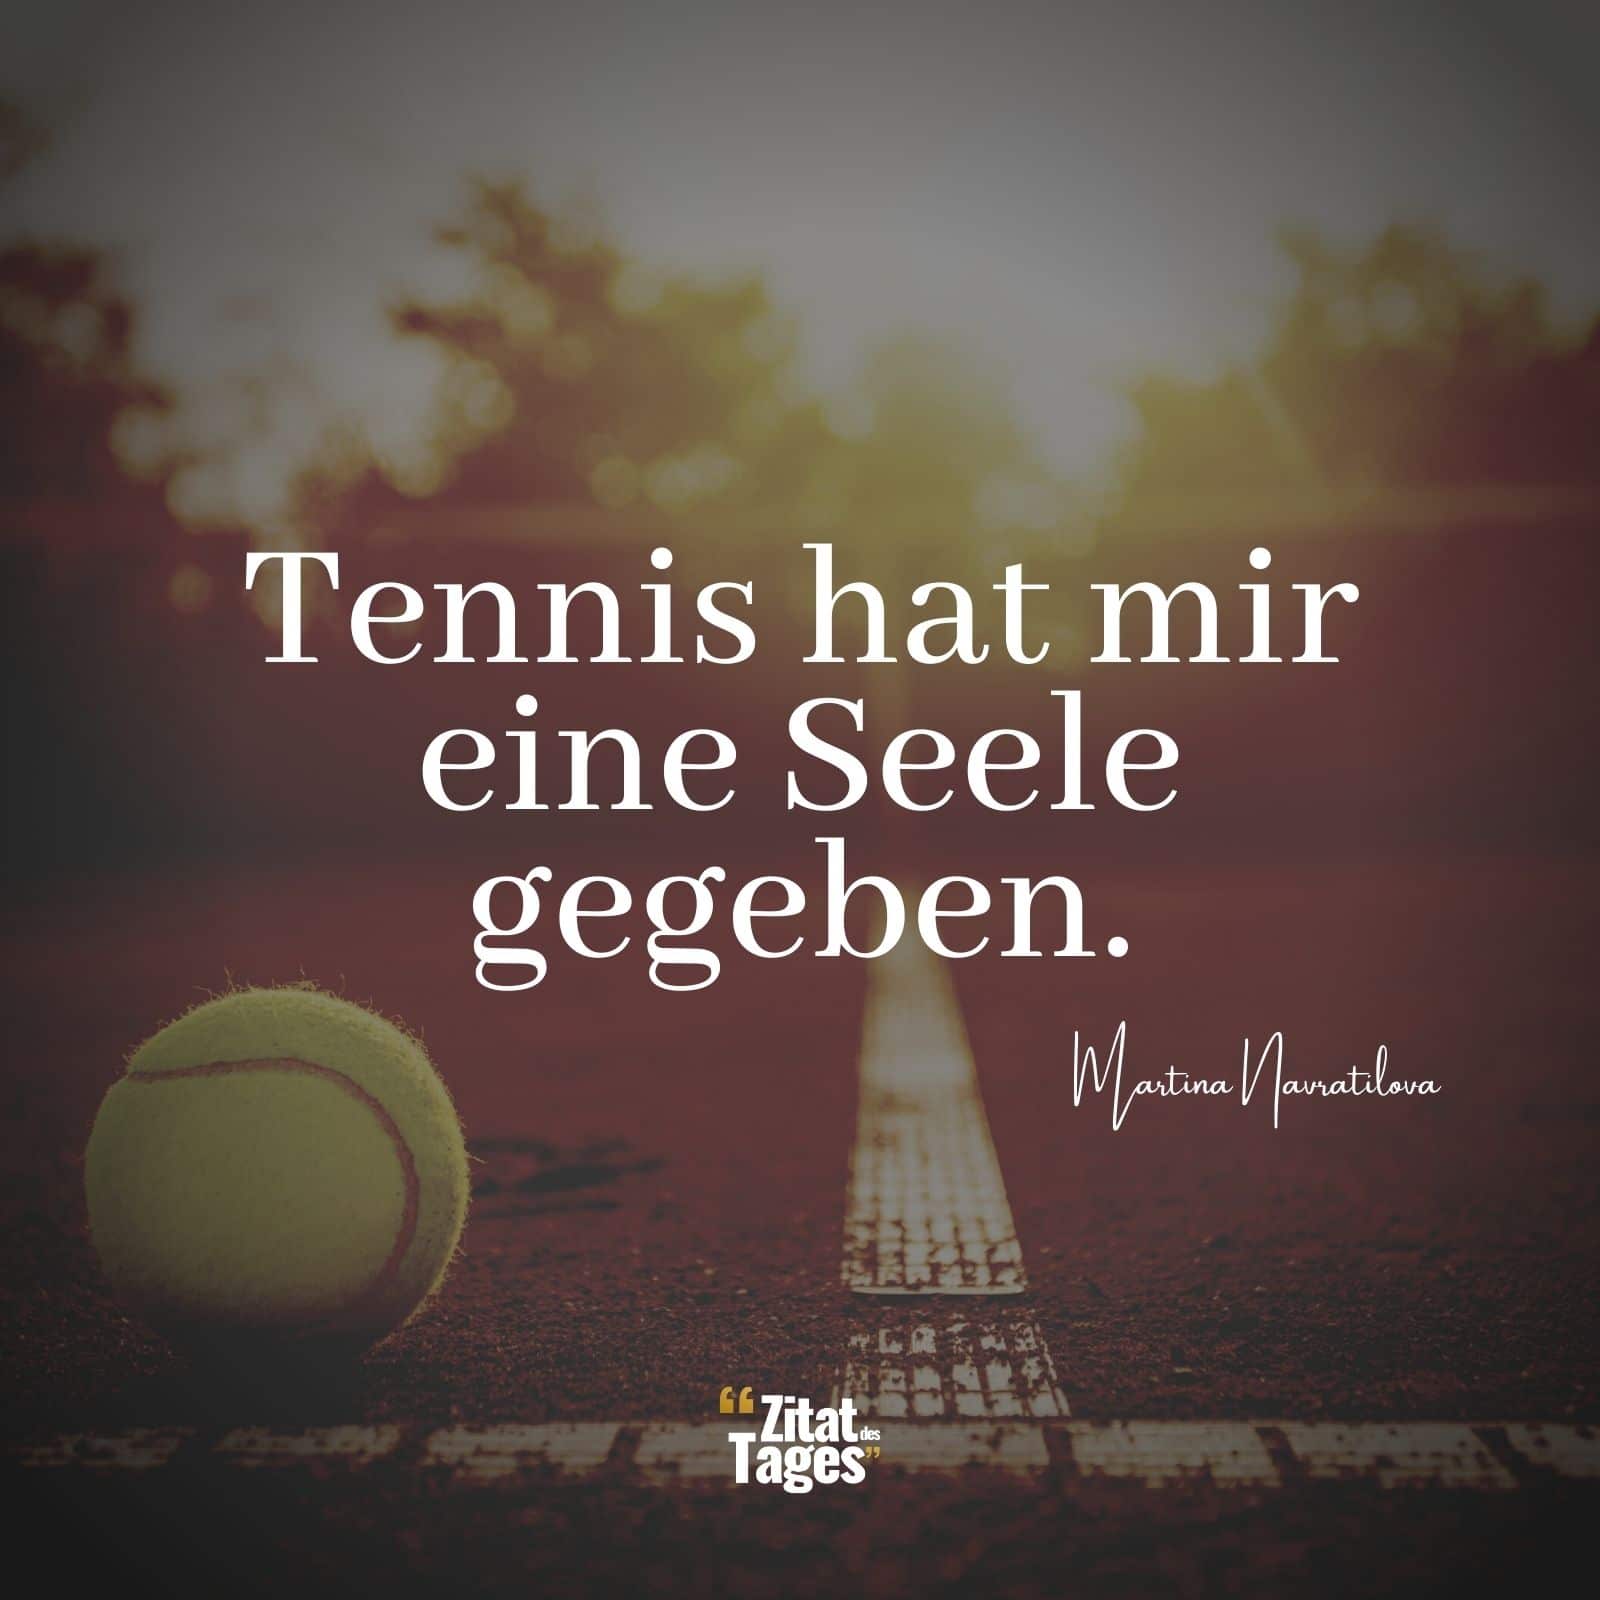 Tennis hat mir eine Seele gegeben. - Martina Navratilova